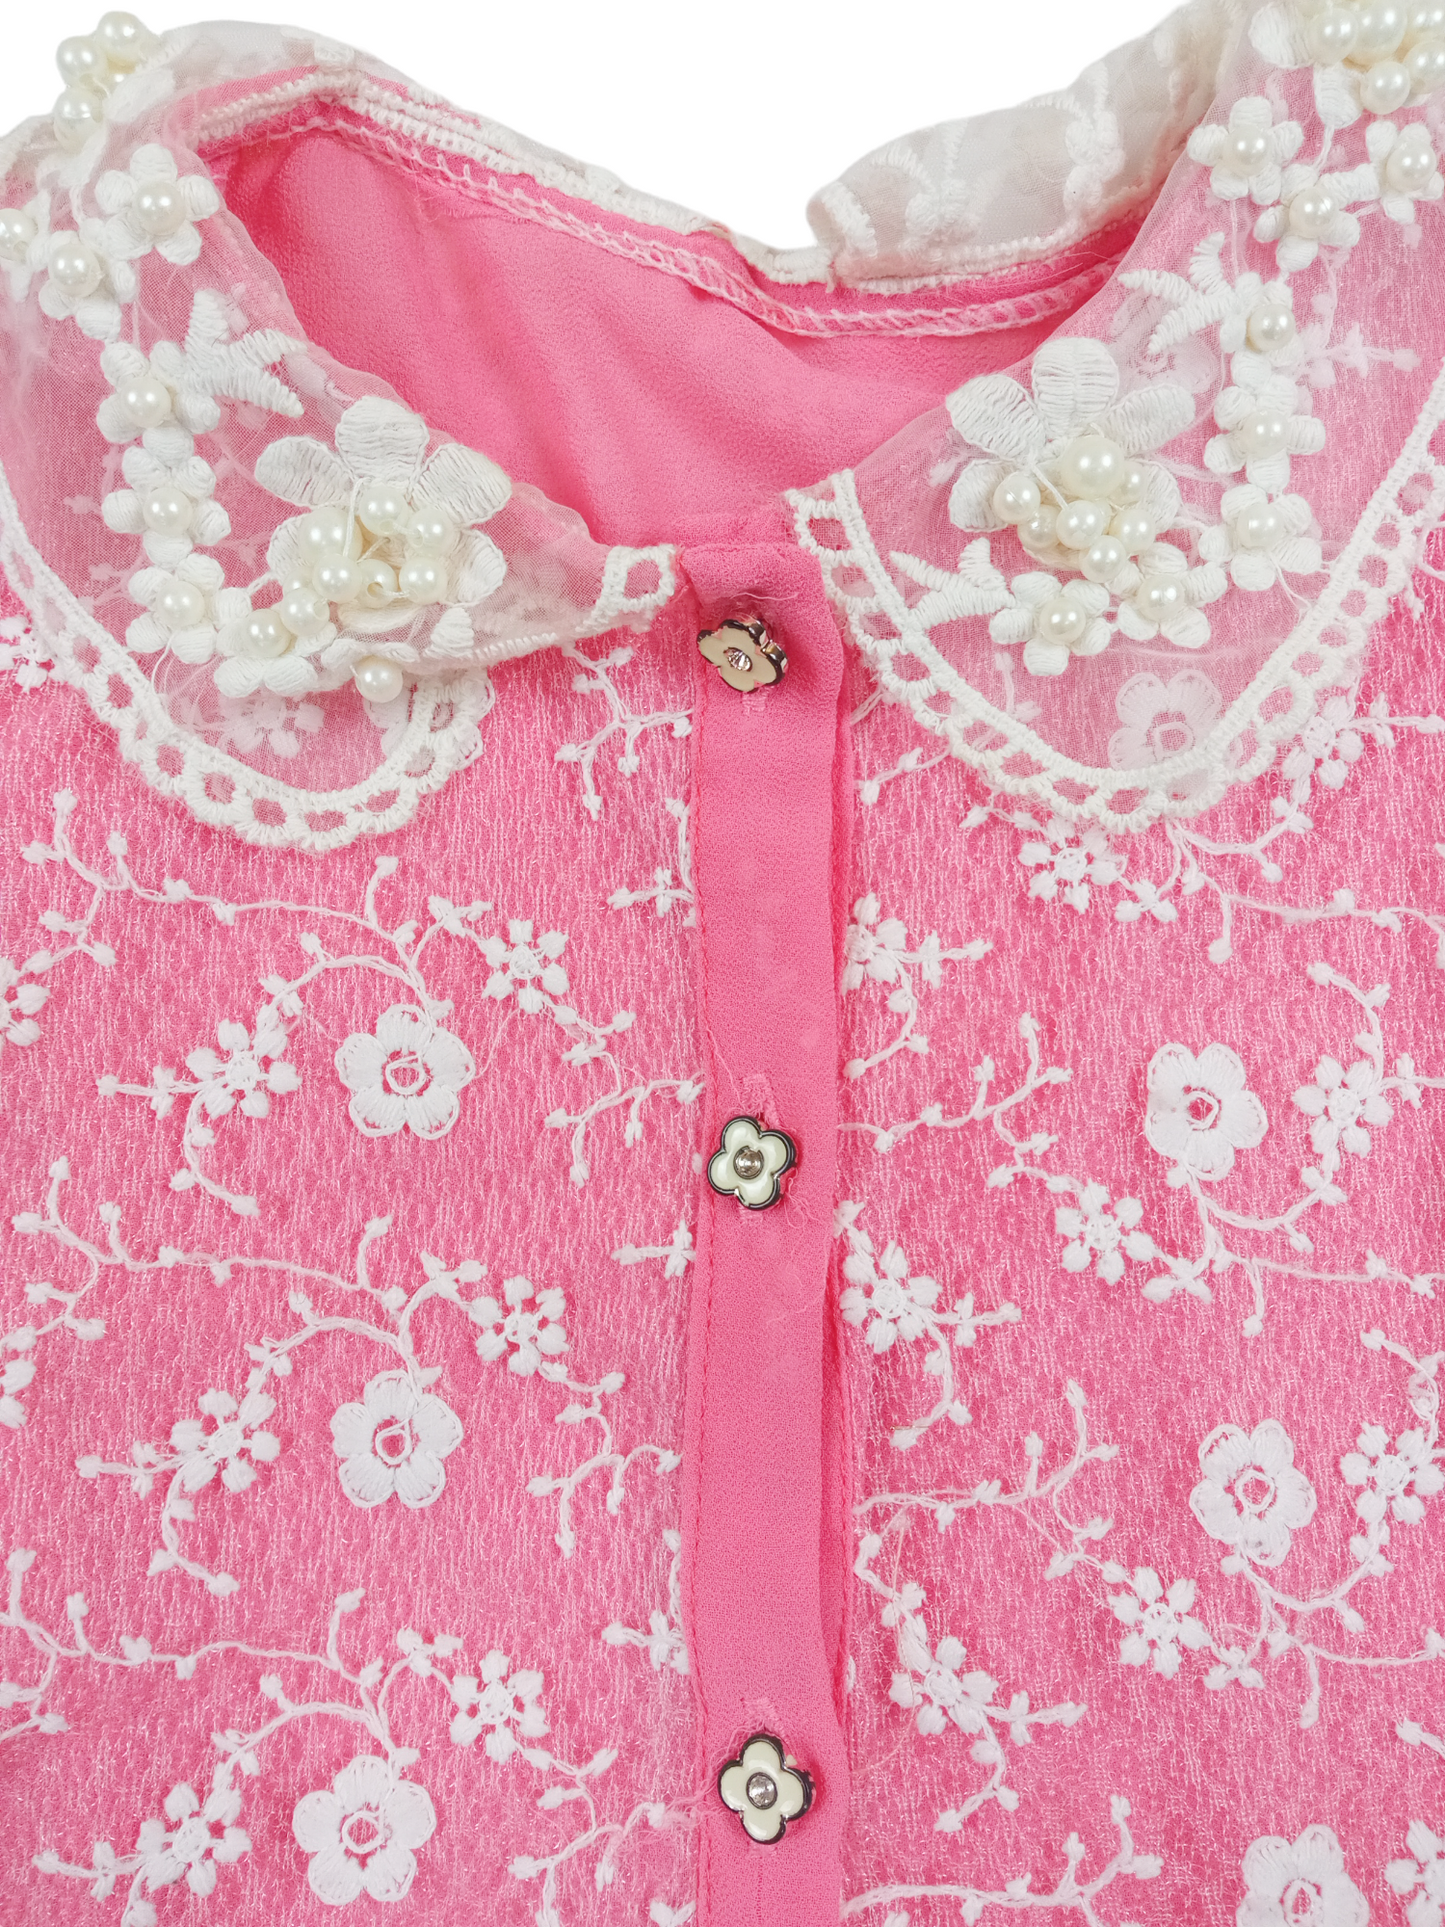 Vestido rosado flores bordadas / Talla 4